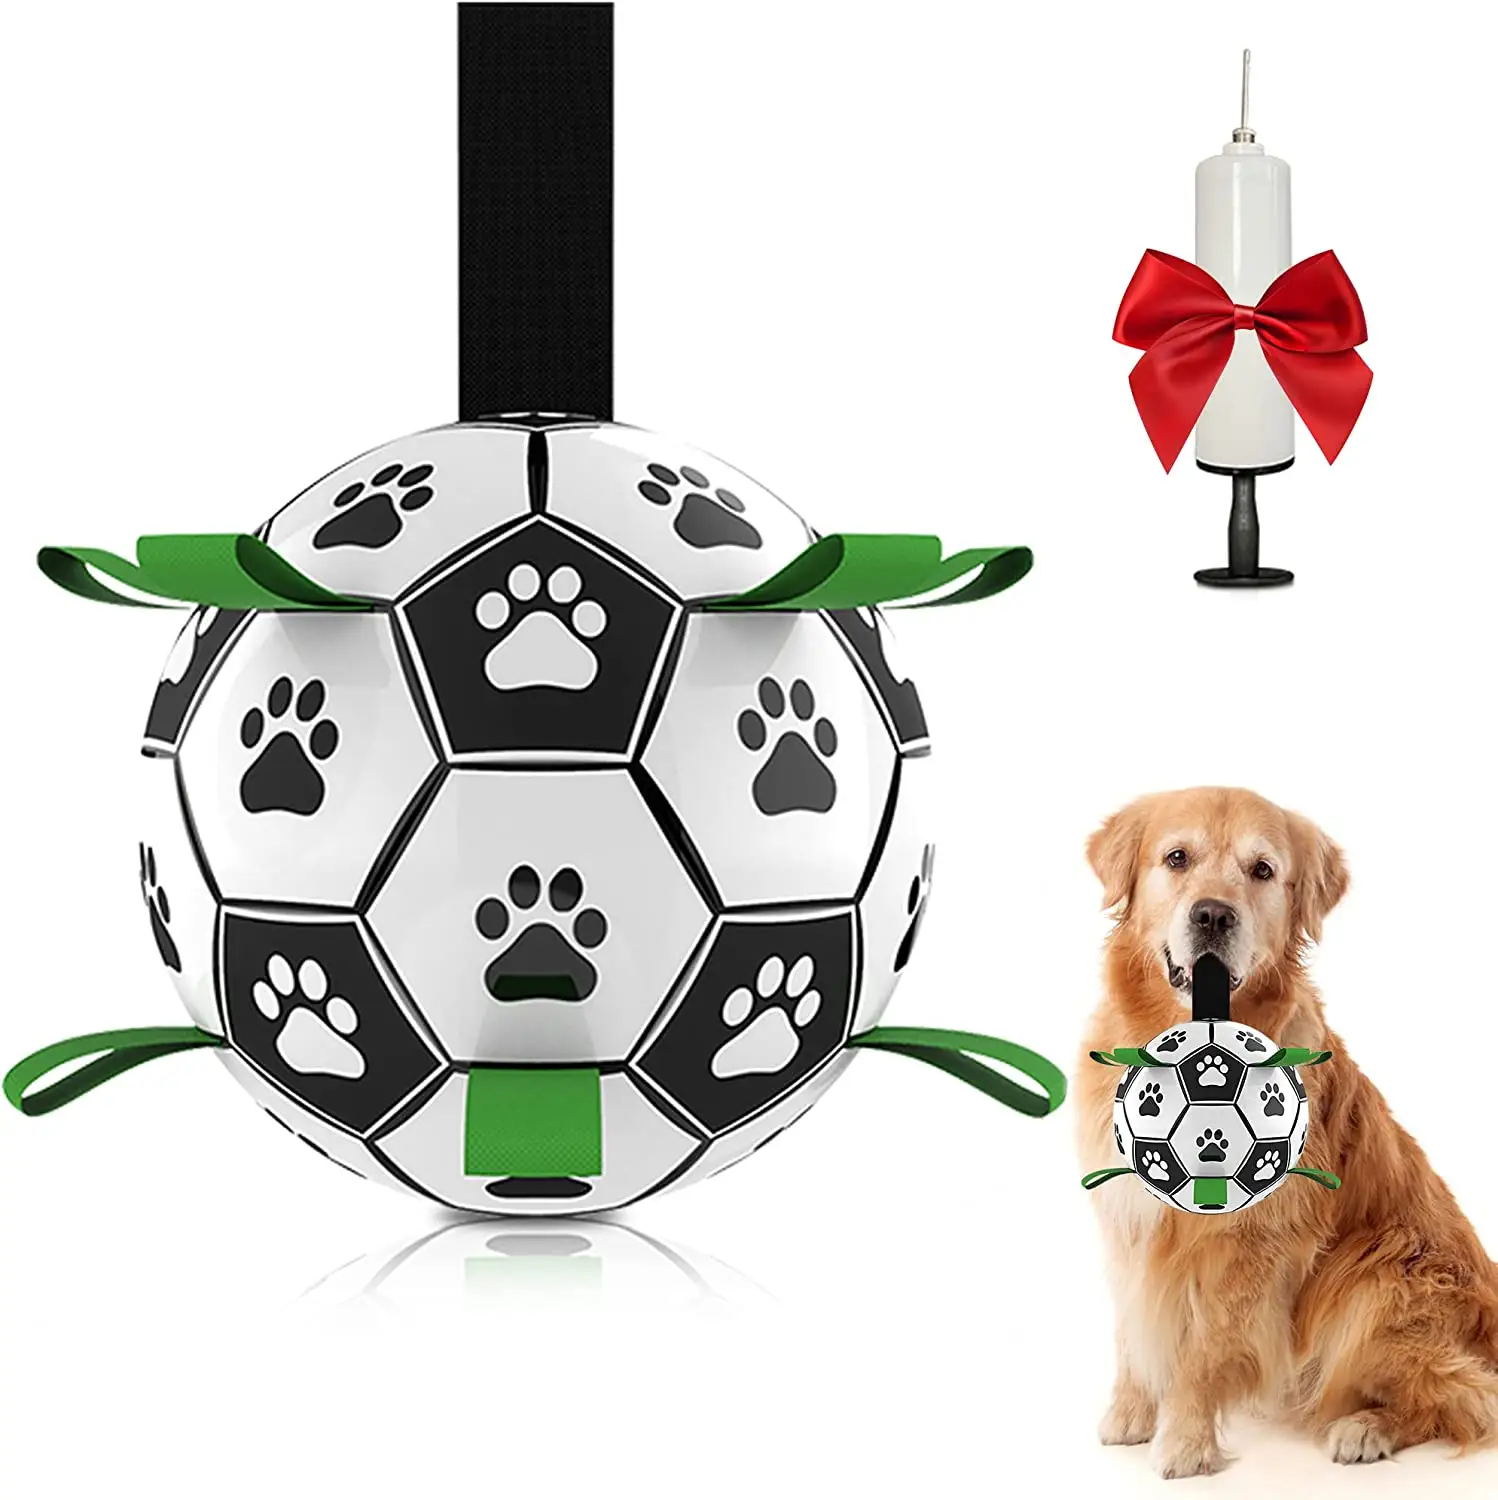 Mainan bola anjing Herding bola sepak bola dengan tali interaktif mainan kunyah untuk Tug of War Puppy mainan bola ulang tahun anjing untuk anjing